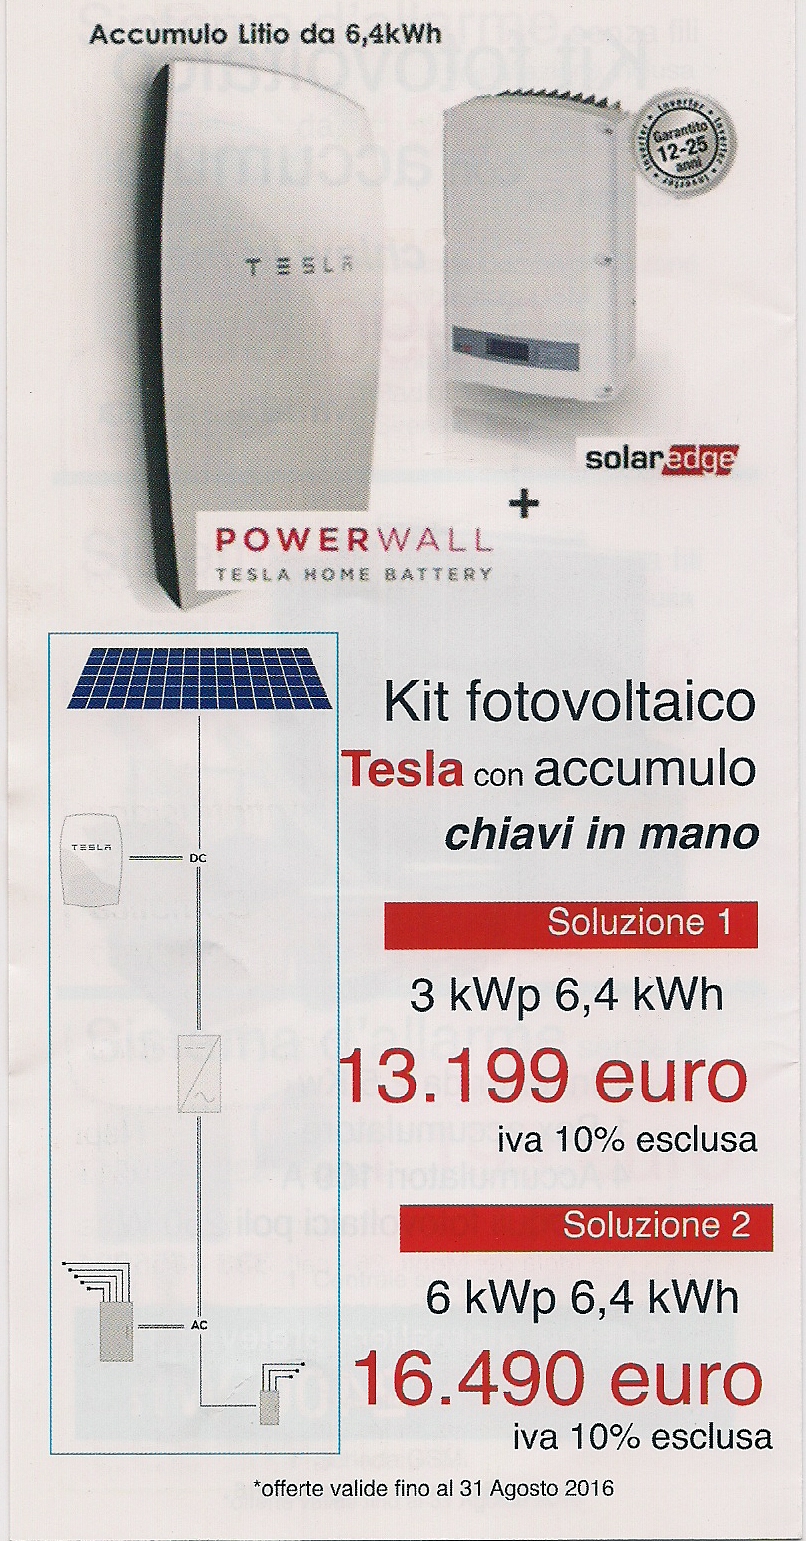 http://www.energialternativa.info/public/newforum/ForumEA/L/Scan_Pic0018.jpg